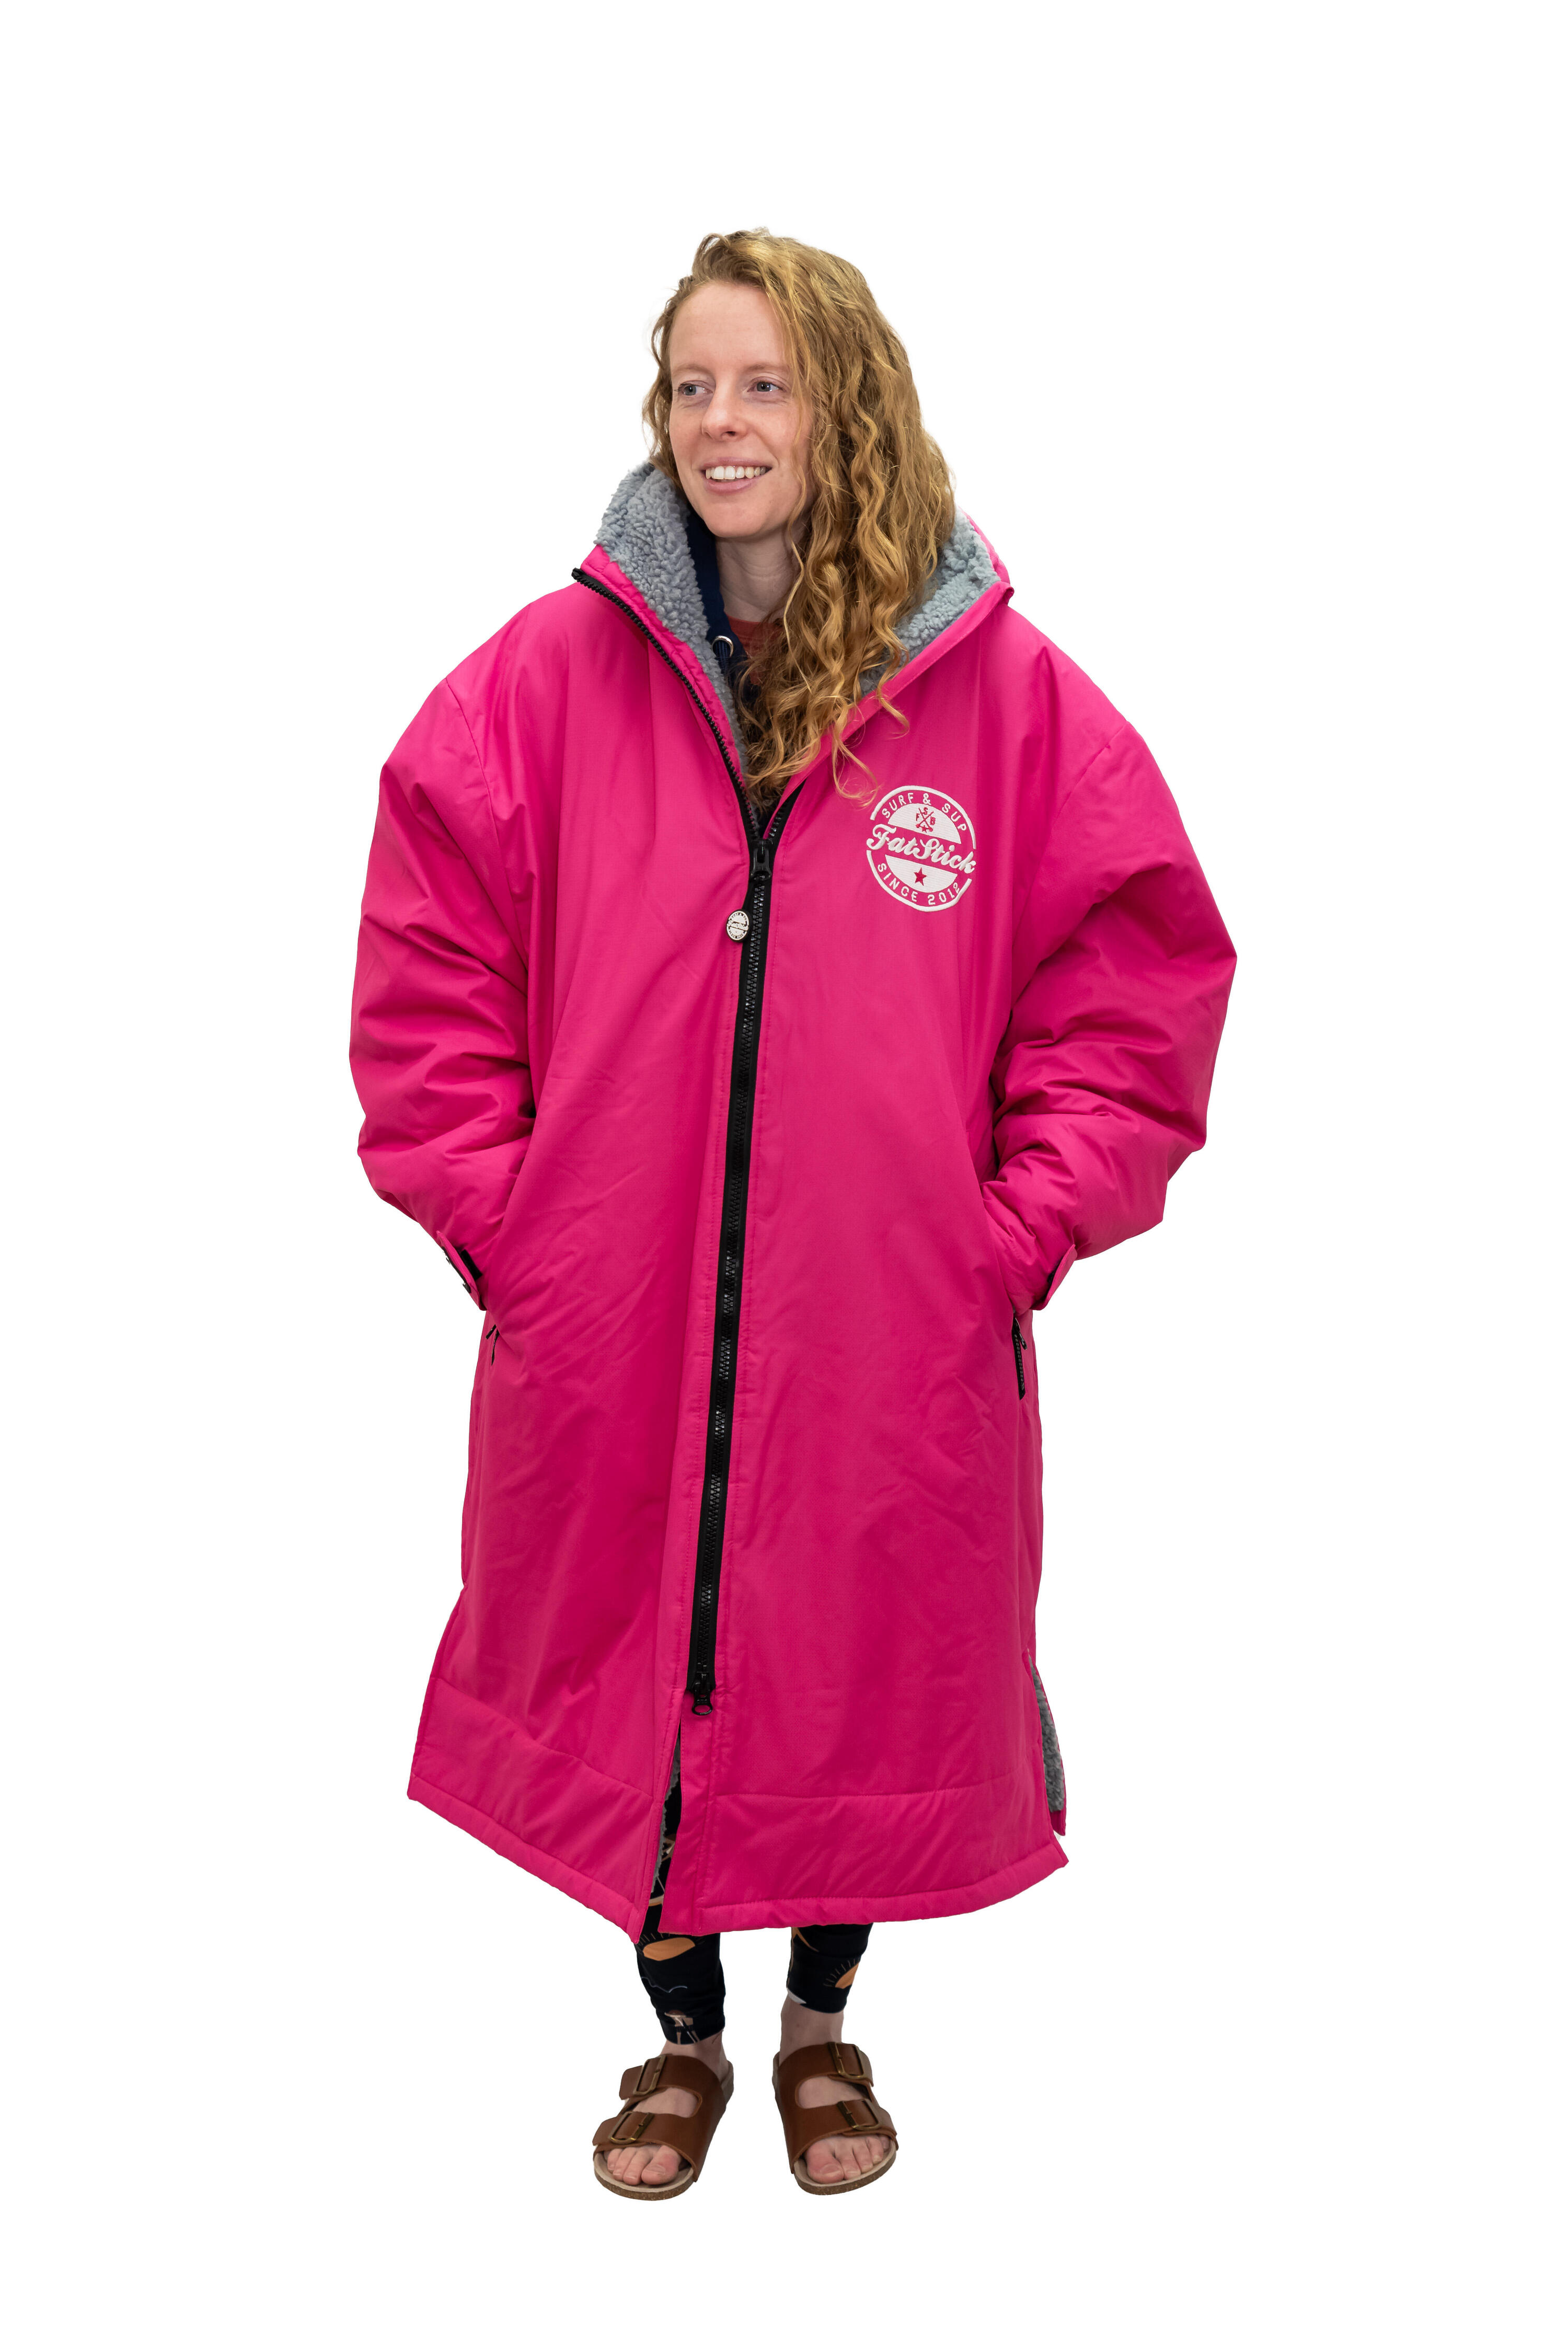 FatWrap Waterproof Change Robe - Hot Pink 5/7